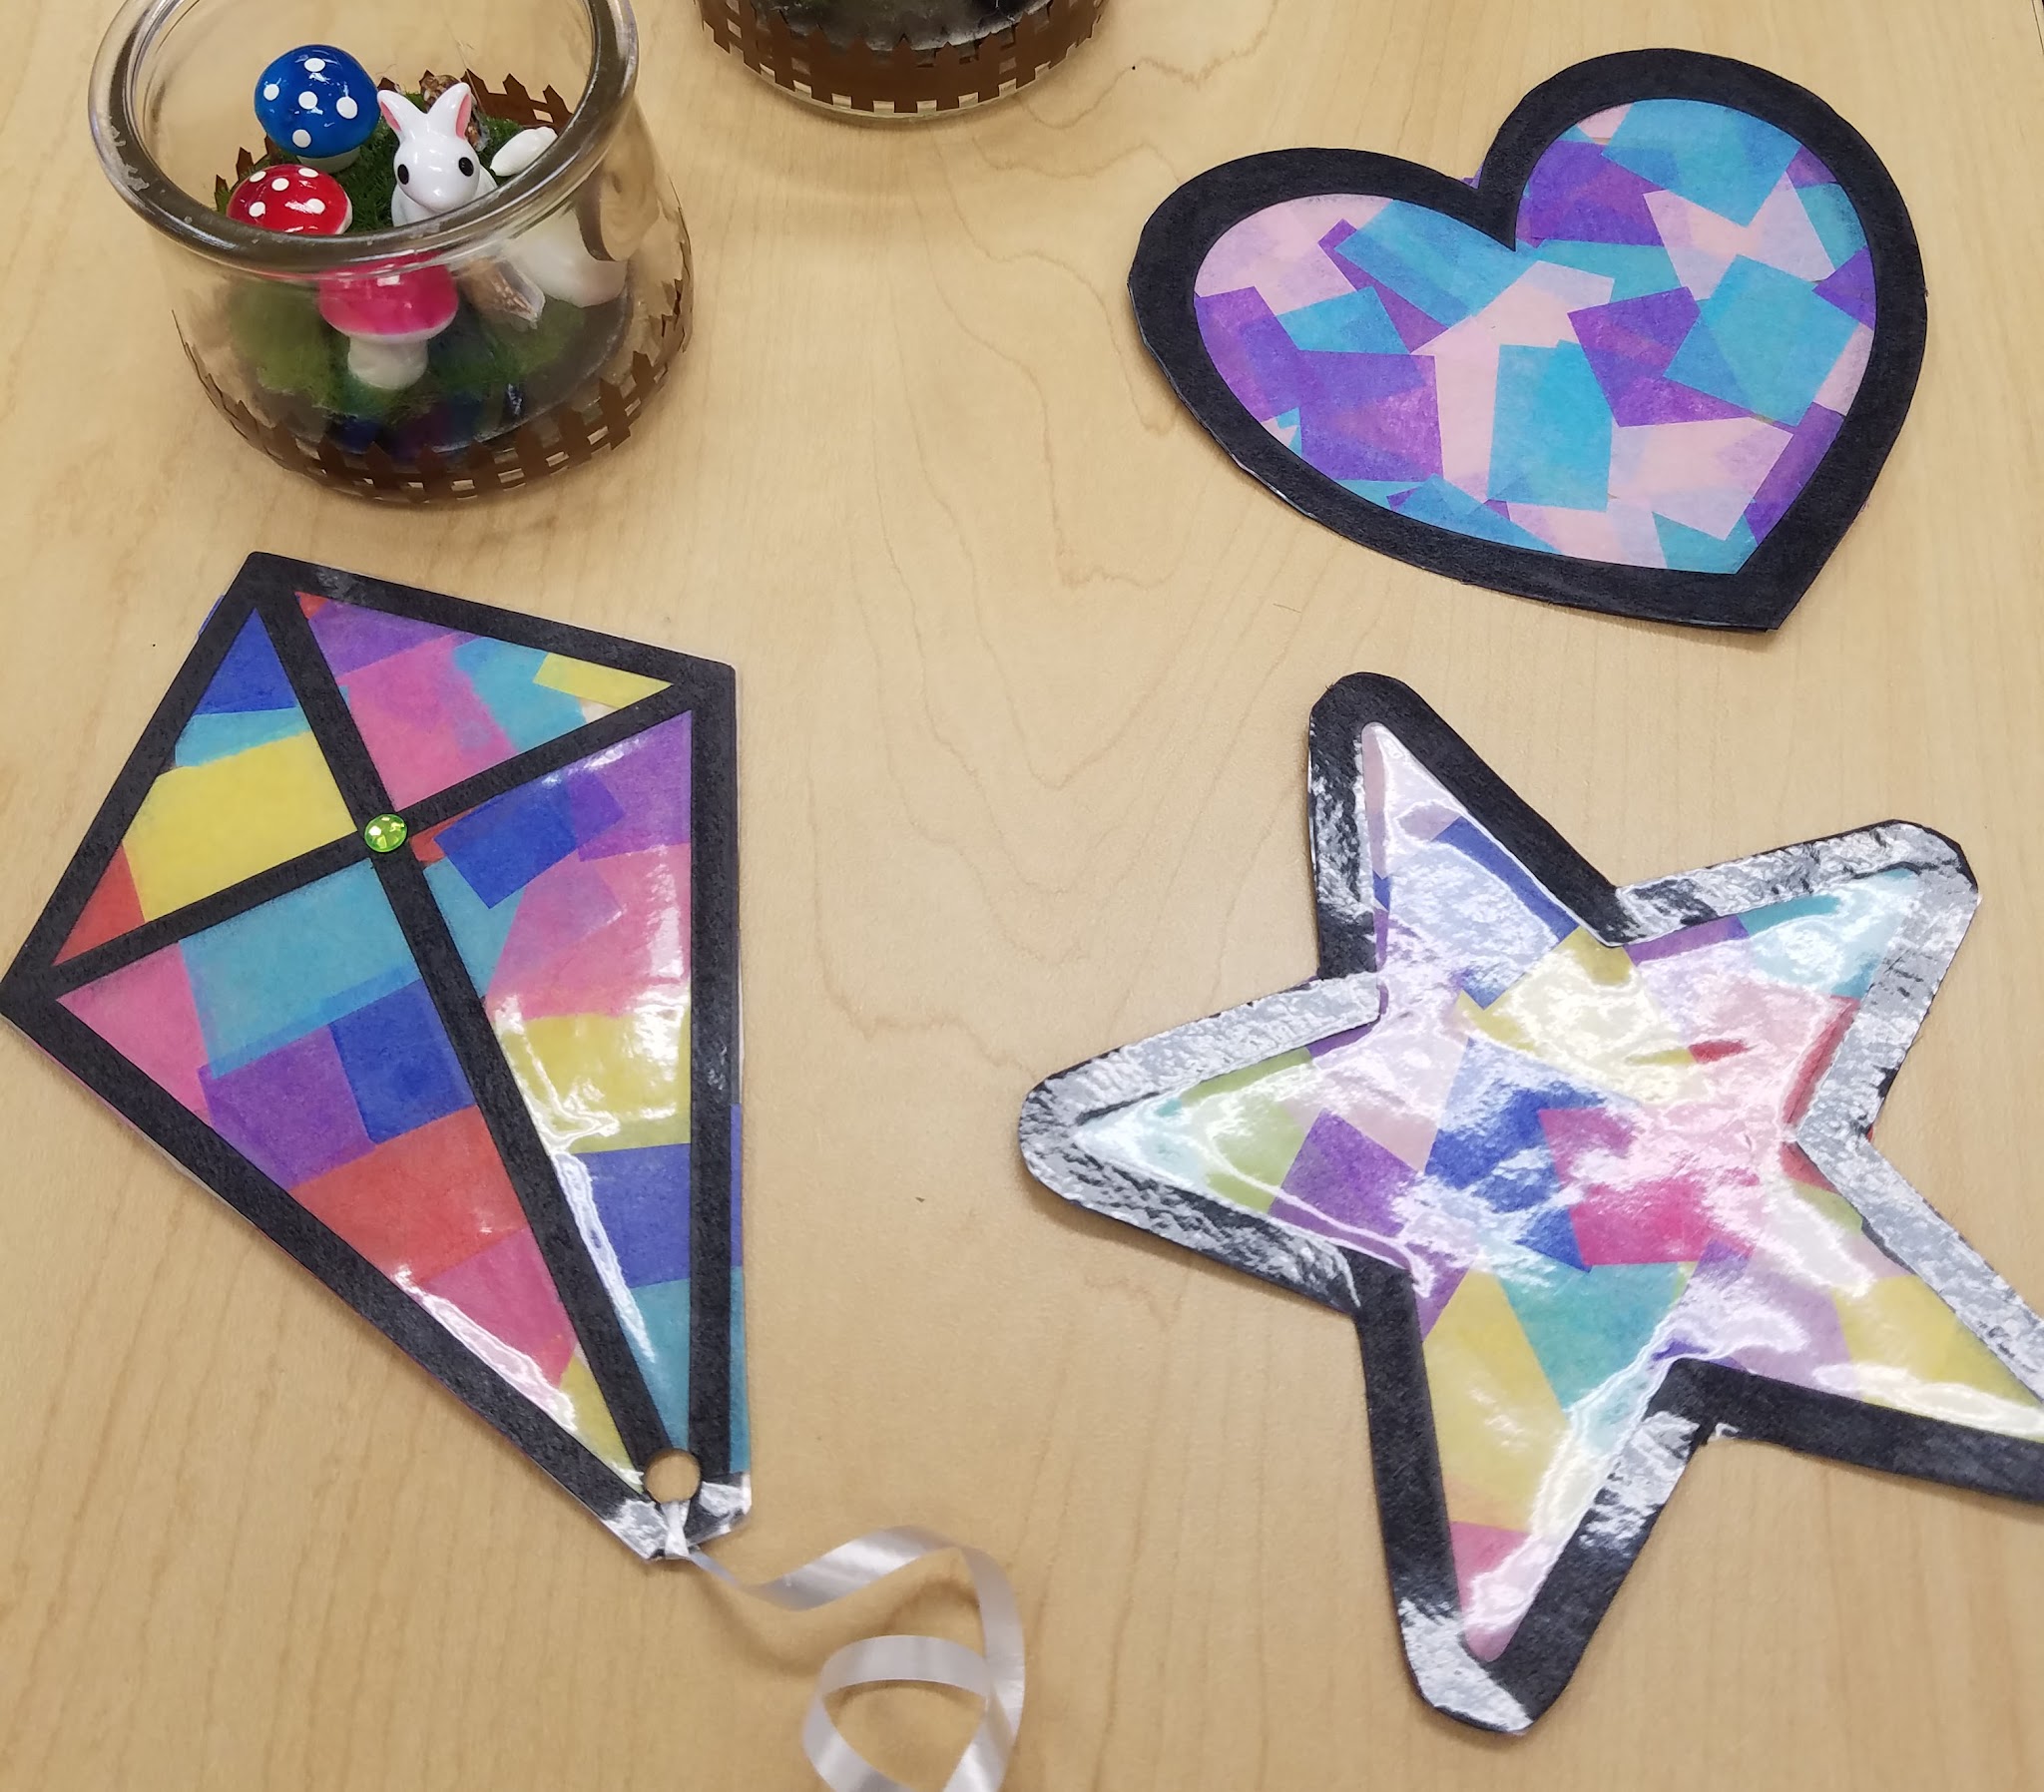 Suncatcher in shape of kite, star, and heart